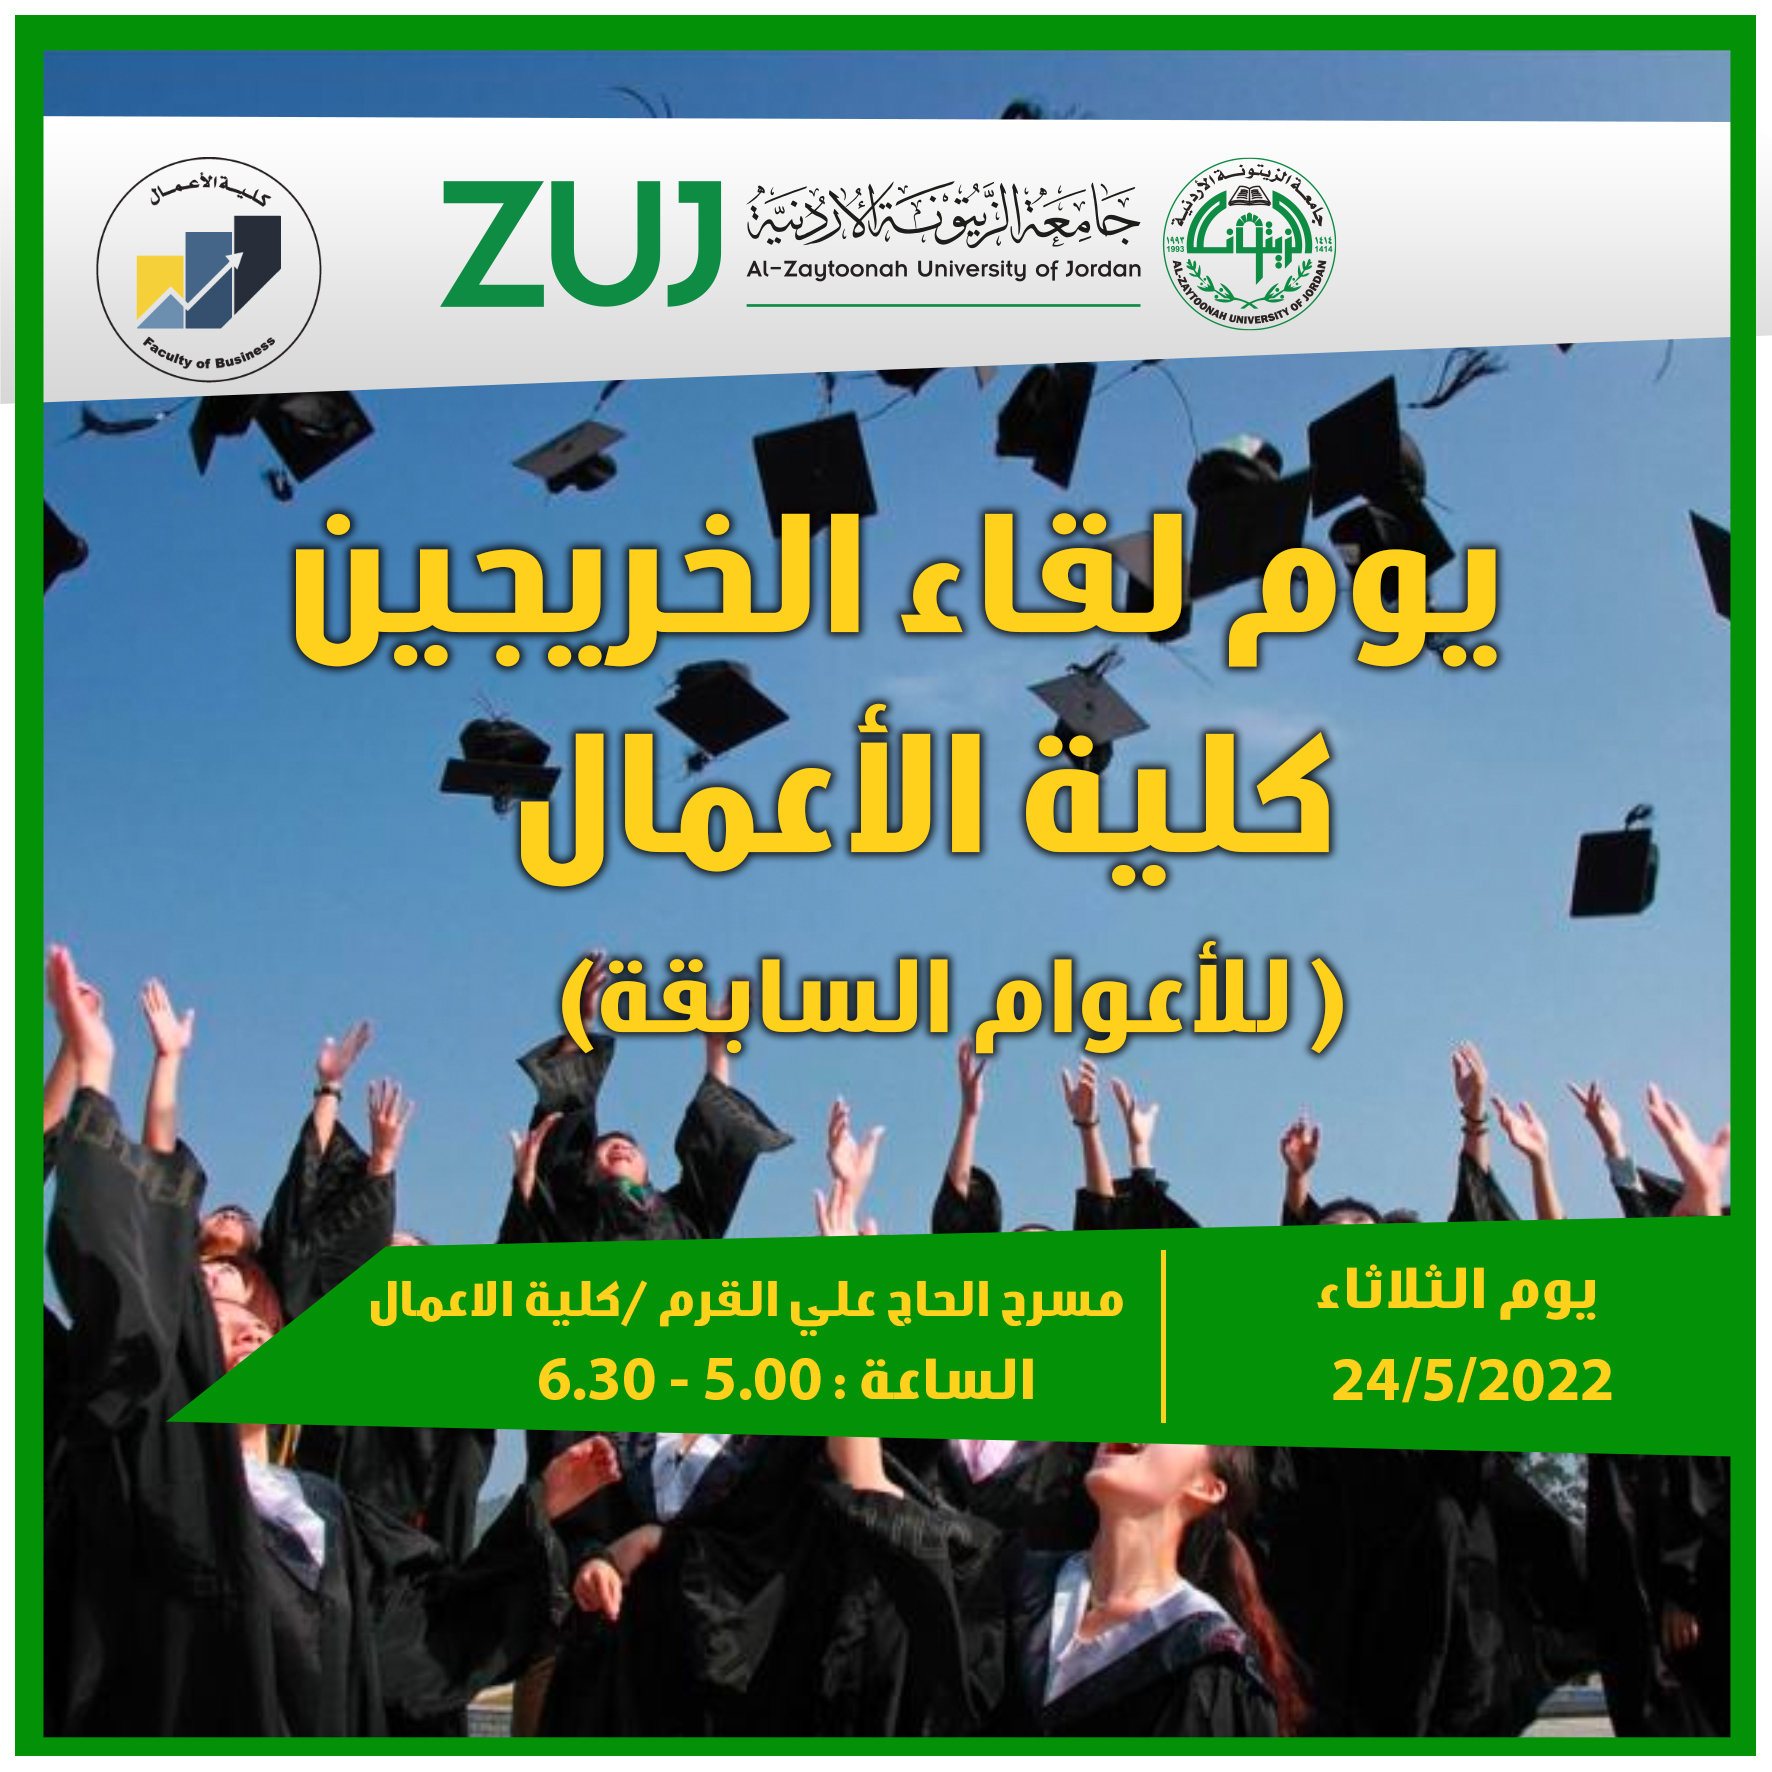 دعوة خاصة لحضور لقاء خريجي كلية الأعمال جامعة الزيتونة الأردنية 